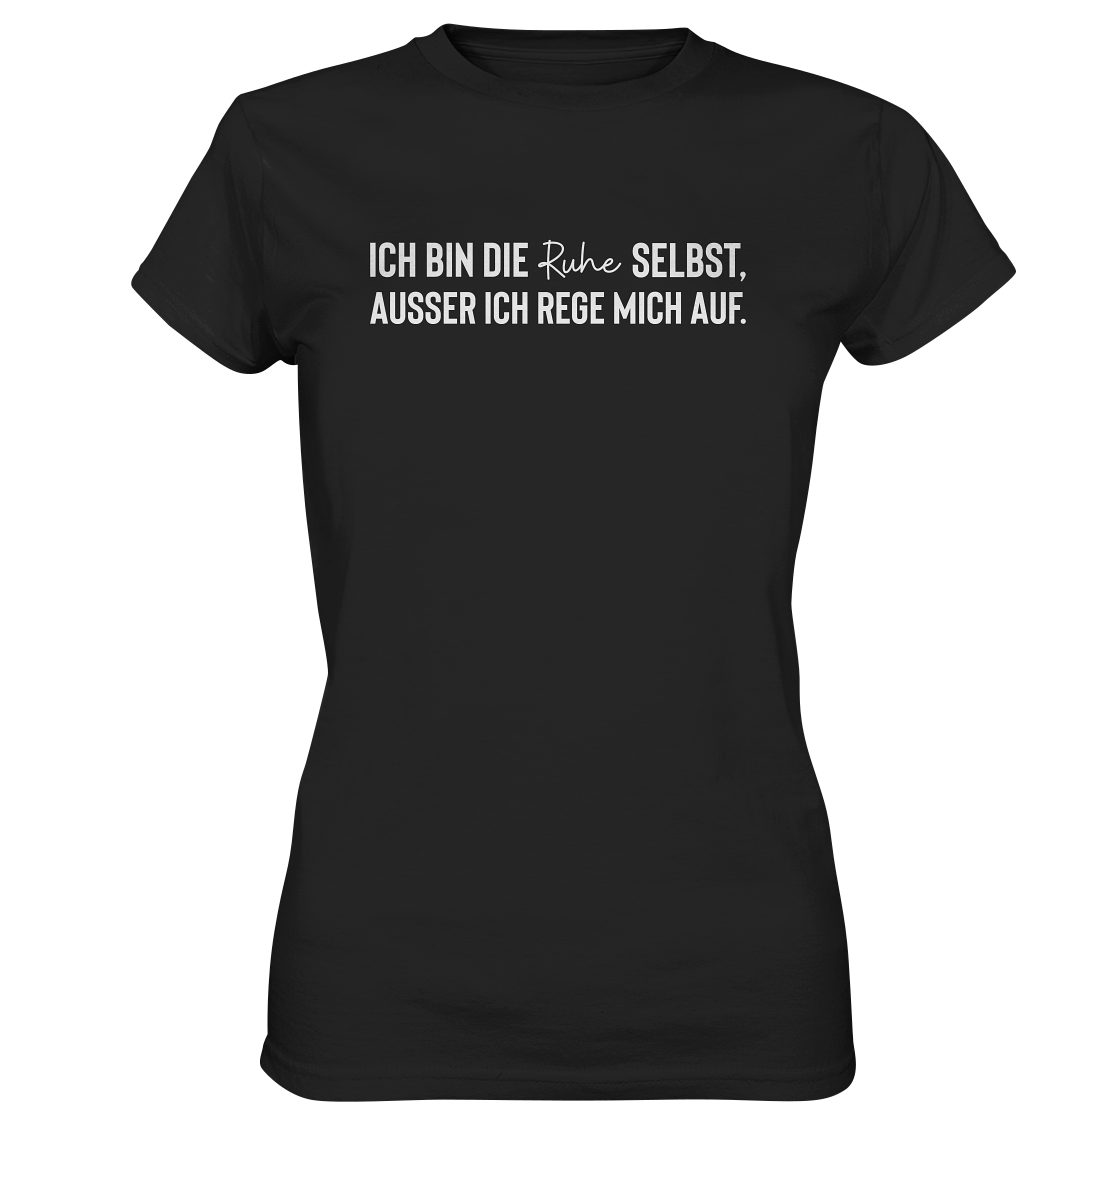 RABUMSEL T-Shirt "Ich bin die Ruhe selbst, ausser ich rege mich auf." - Frauen T-Shirt Bedruckt in Deutschland, Hohe Waschbeständigkeit, Hohe Farbbrillianz